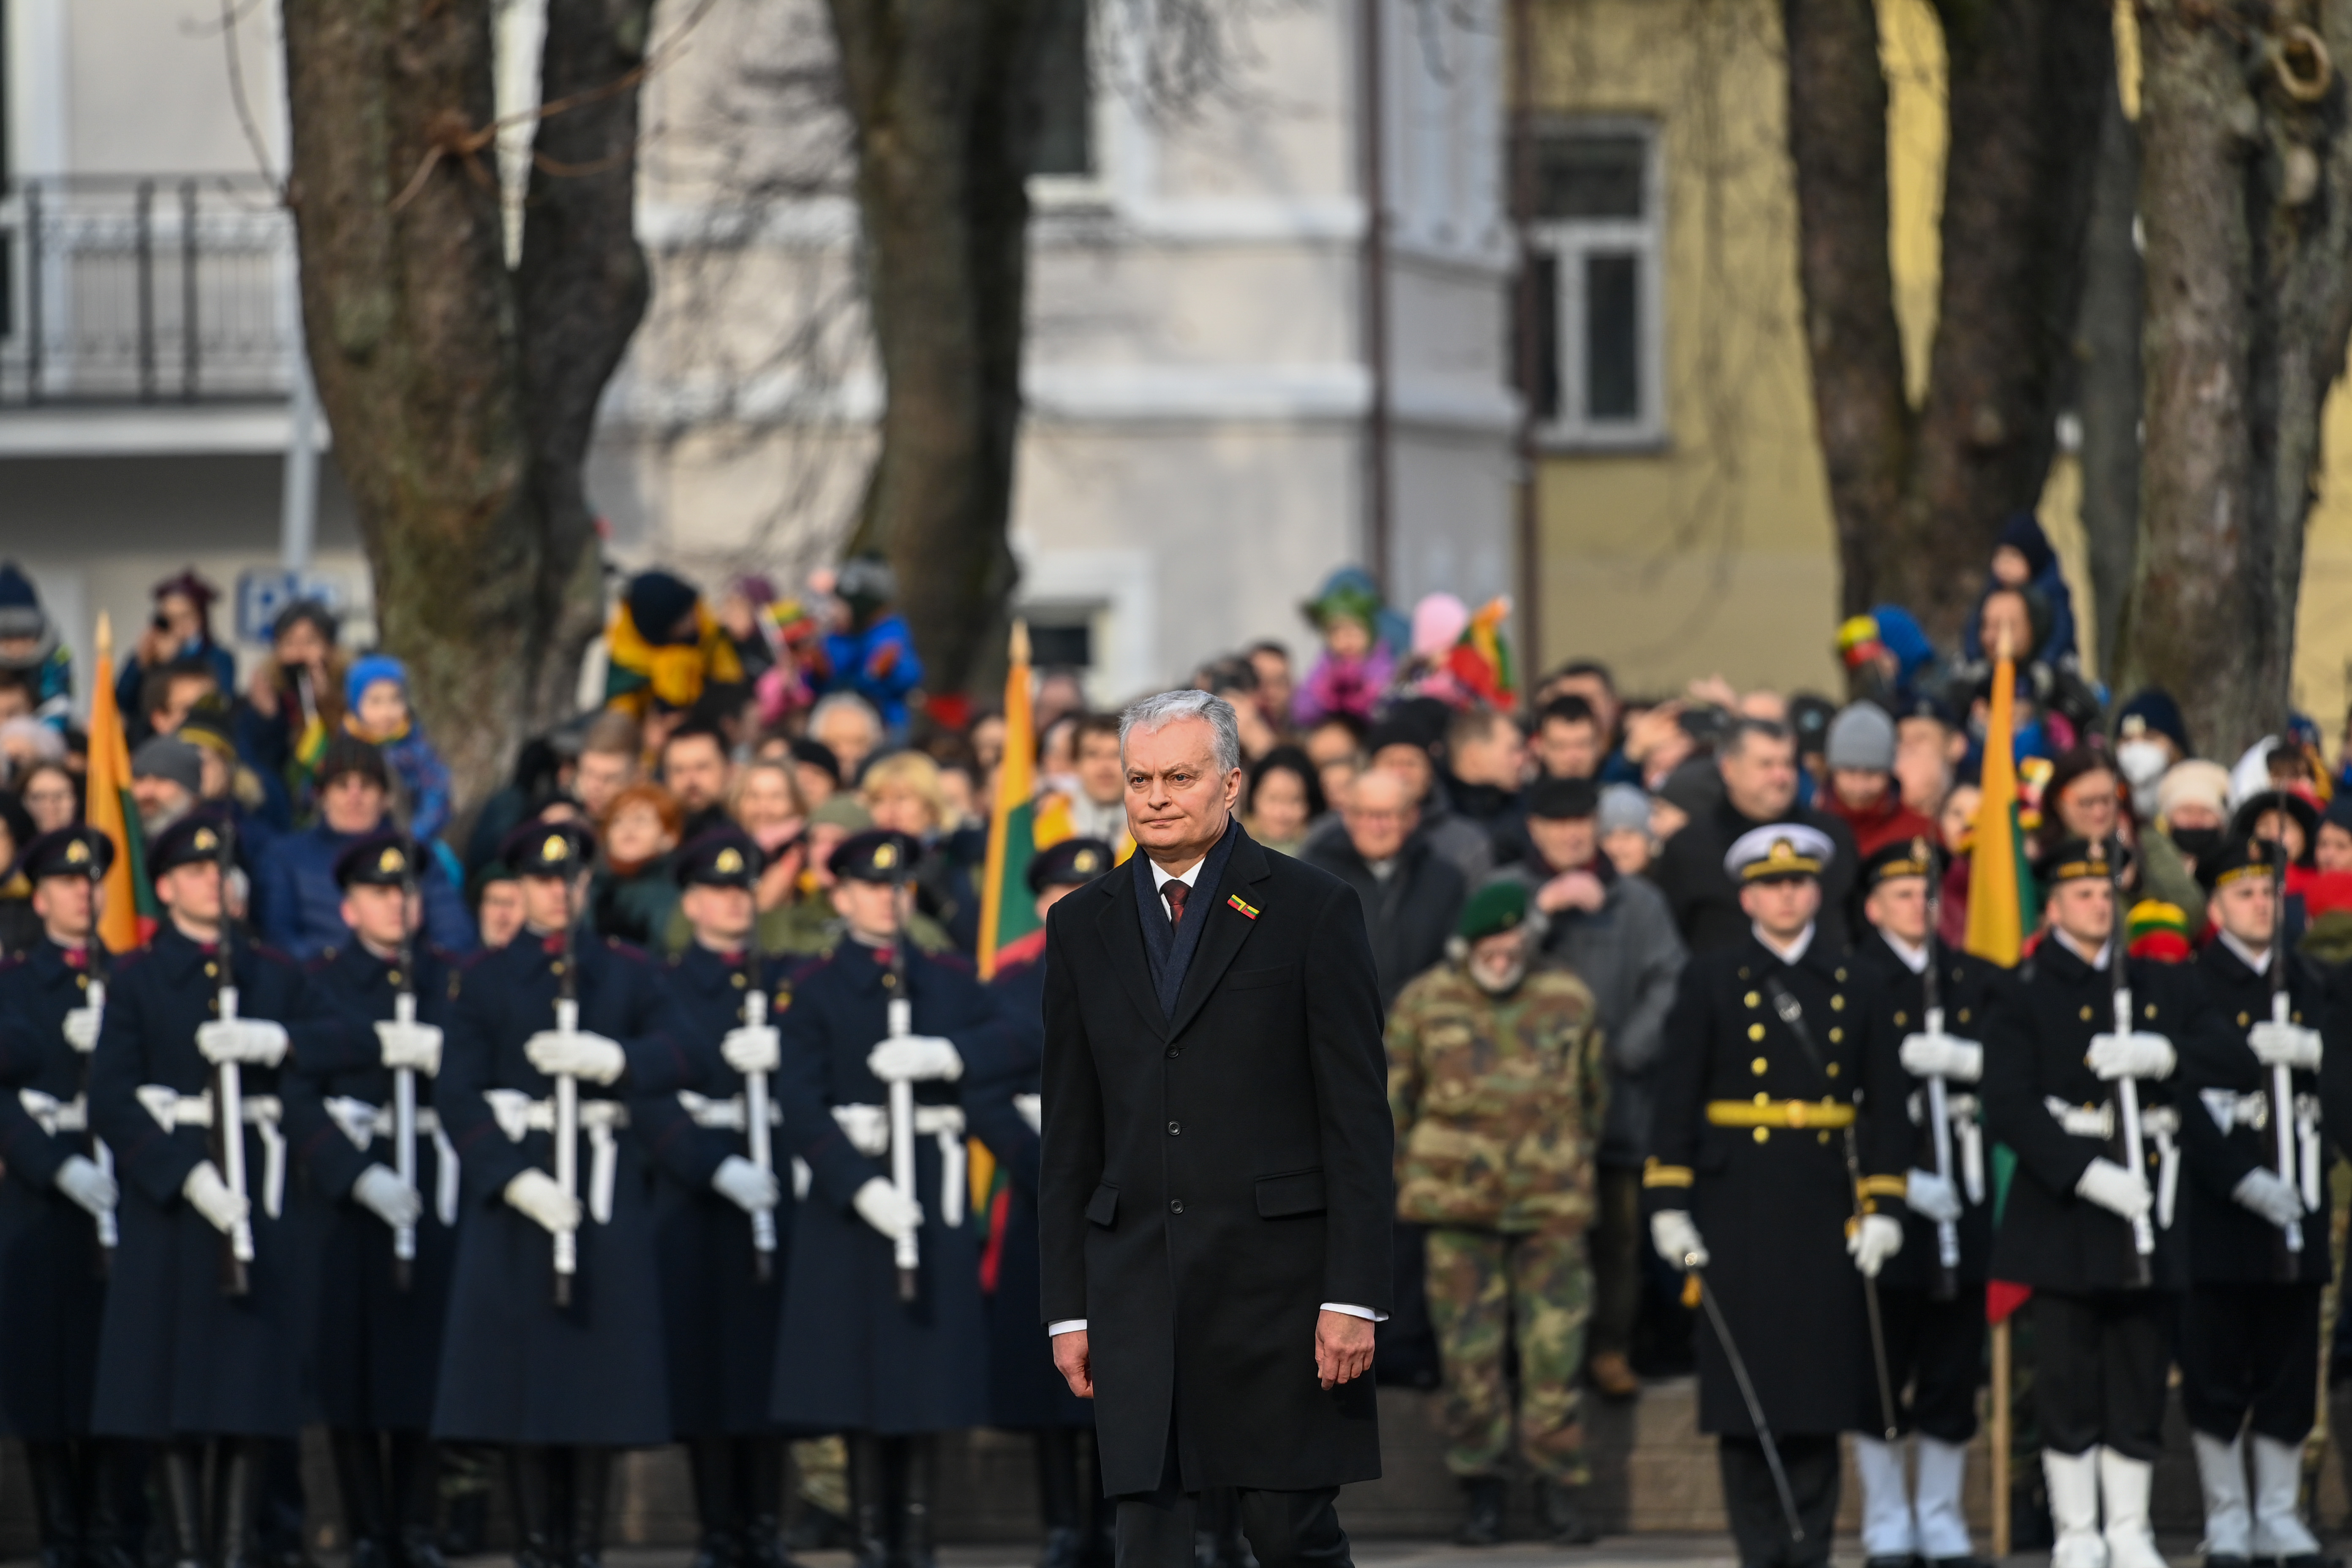 3 балтийские страны. Литва 16 февраля. День независимости Литвы 16 февраля. Три балтийских лидера. Национальные цвета балтийских стран.